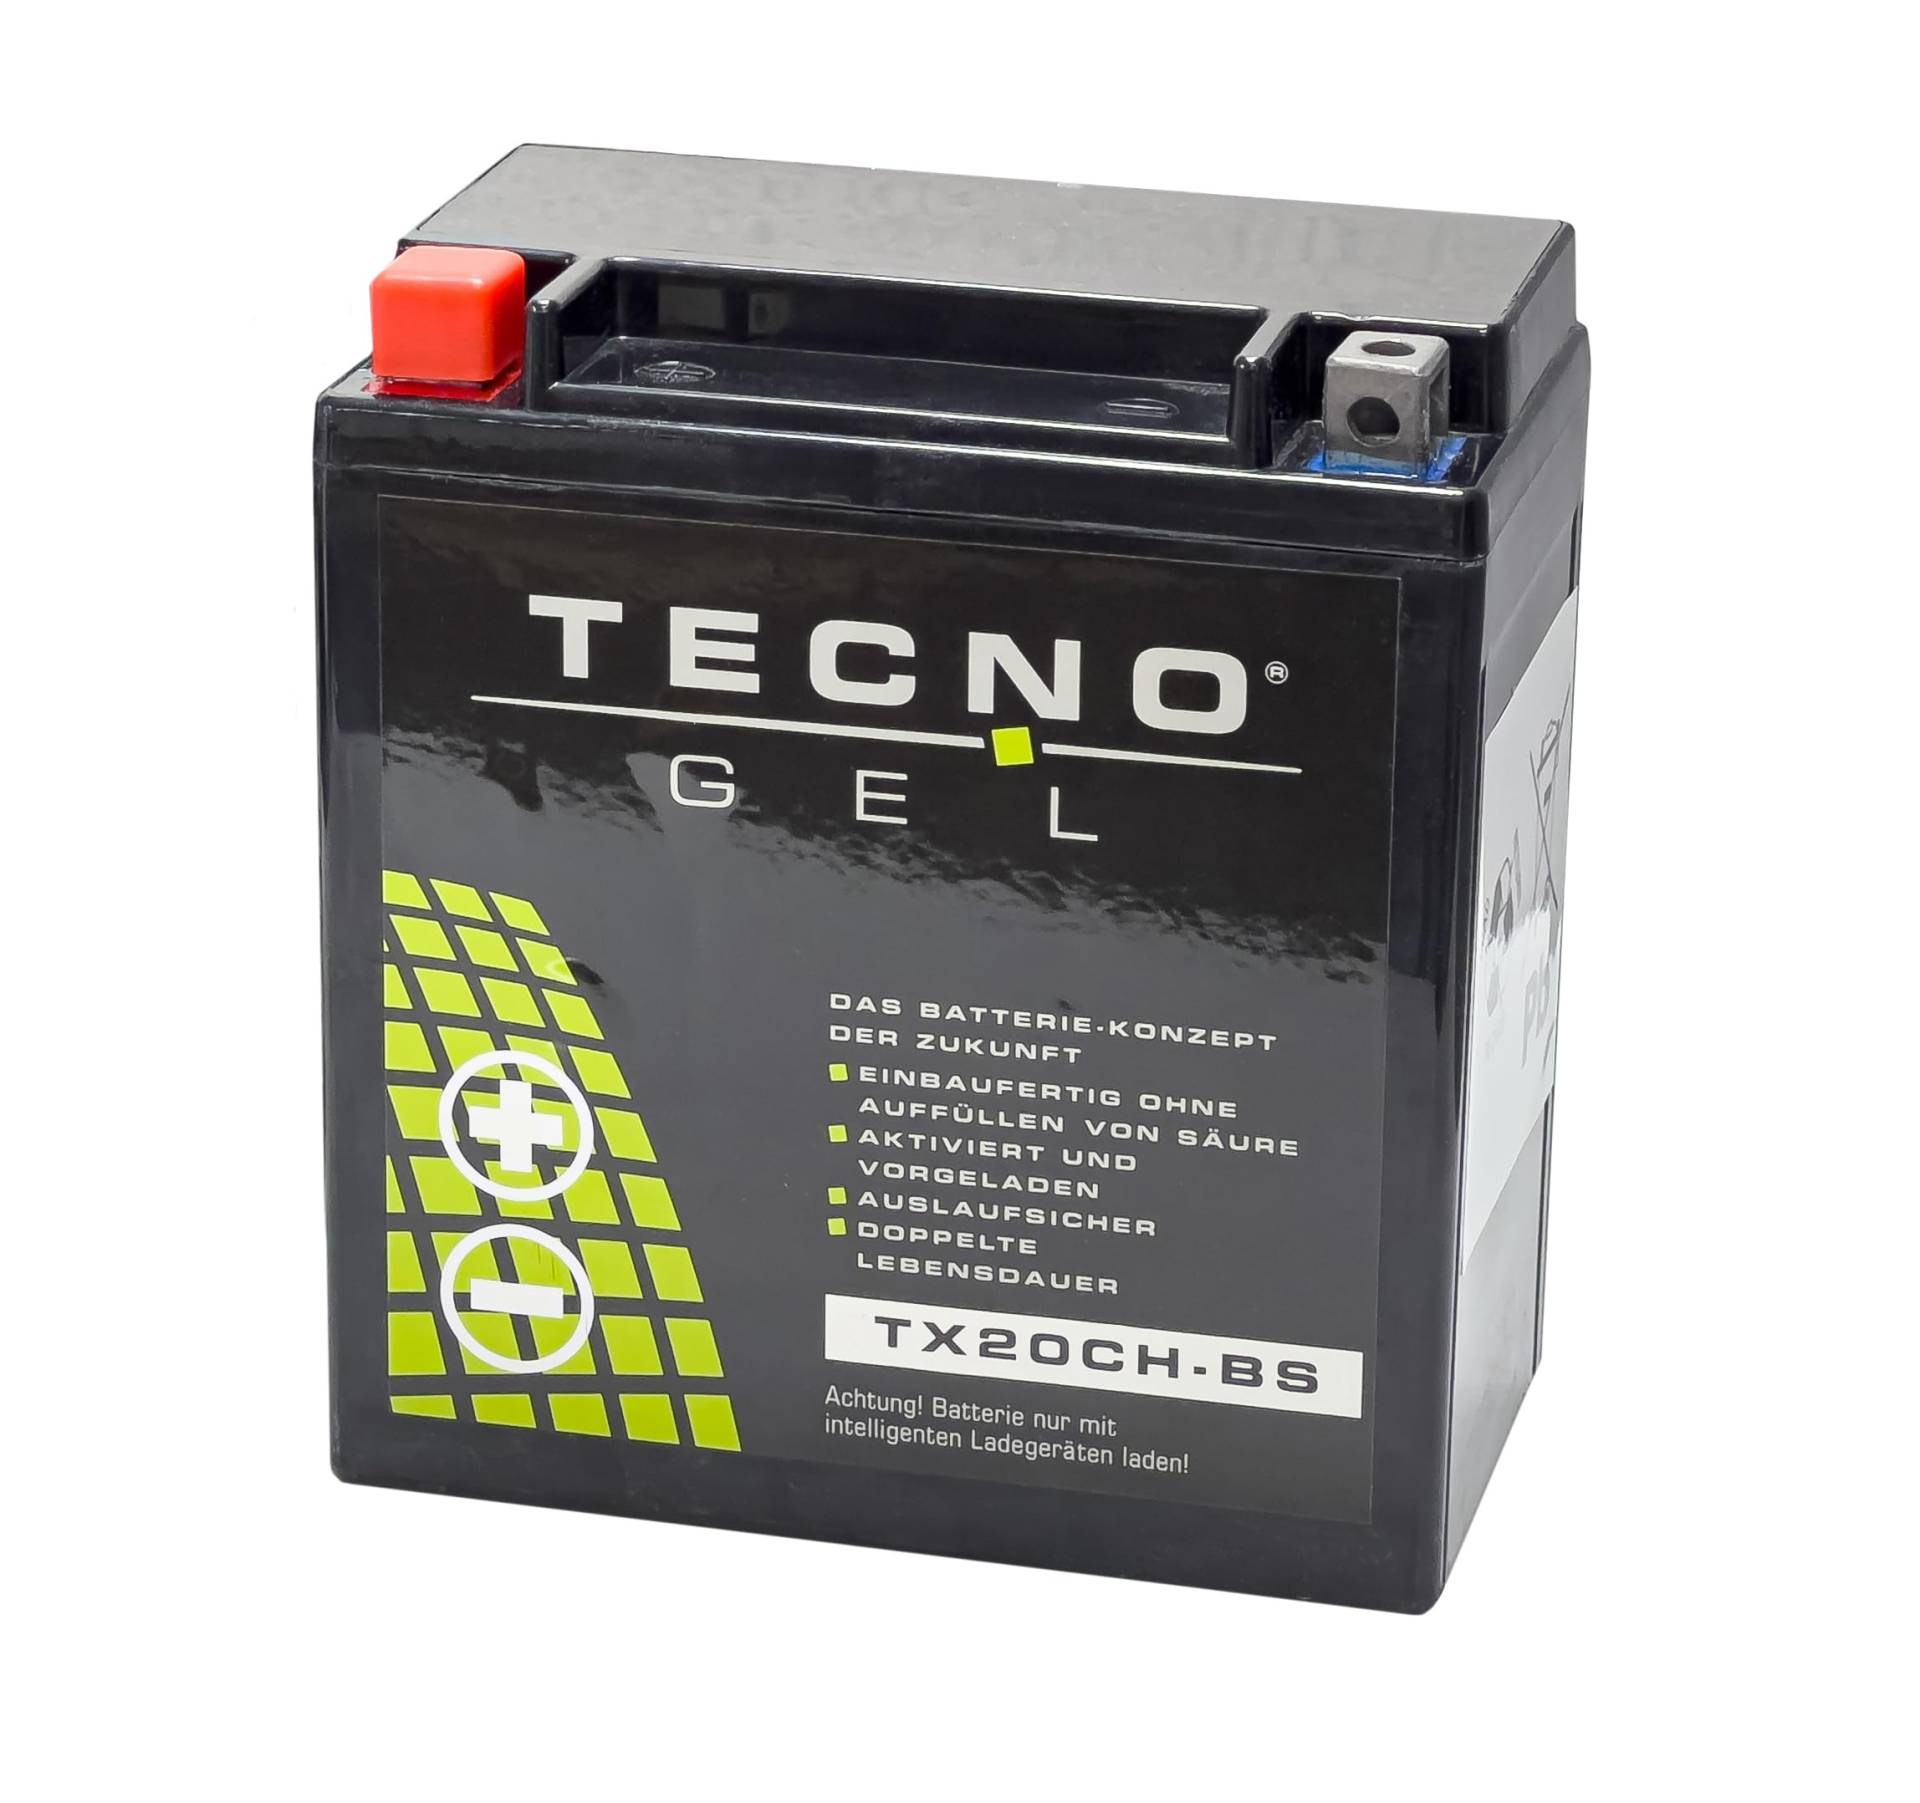 TECNO-GEL Motorrad-Batterie für YTX20CH-BS für MOTO GUZZI Breva 850, 1100, 1200 m/o ABS 2005-2011, 12V Gel-Batterie 18AH, 150x87x161 mm von Wirth-Federn